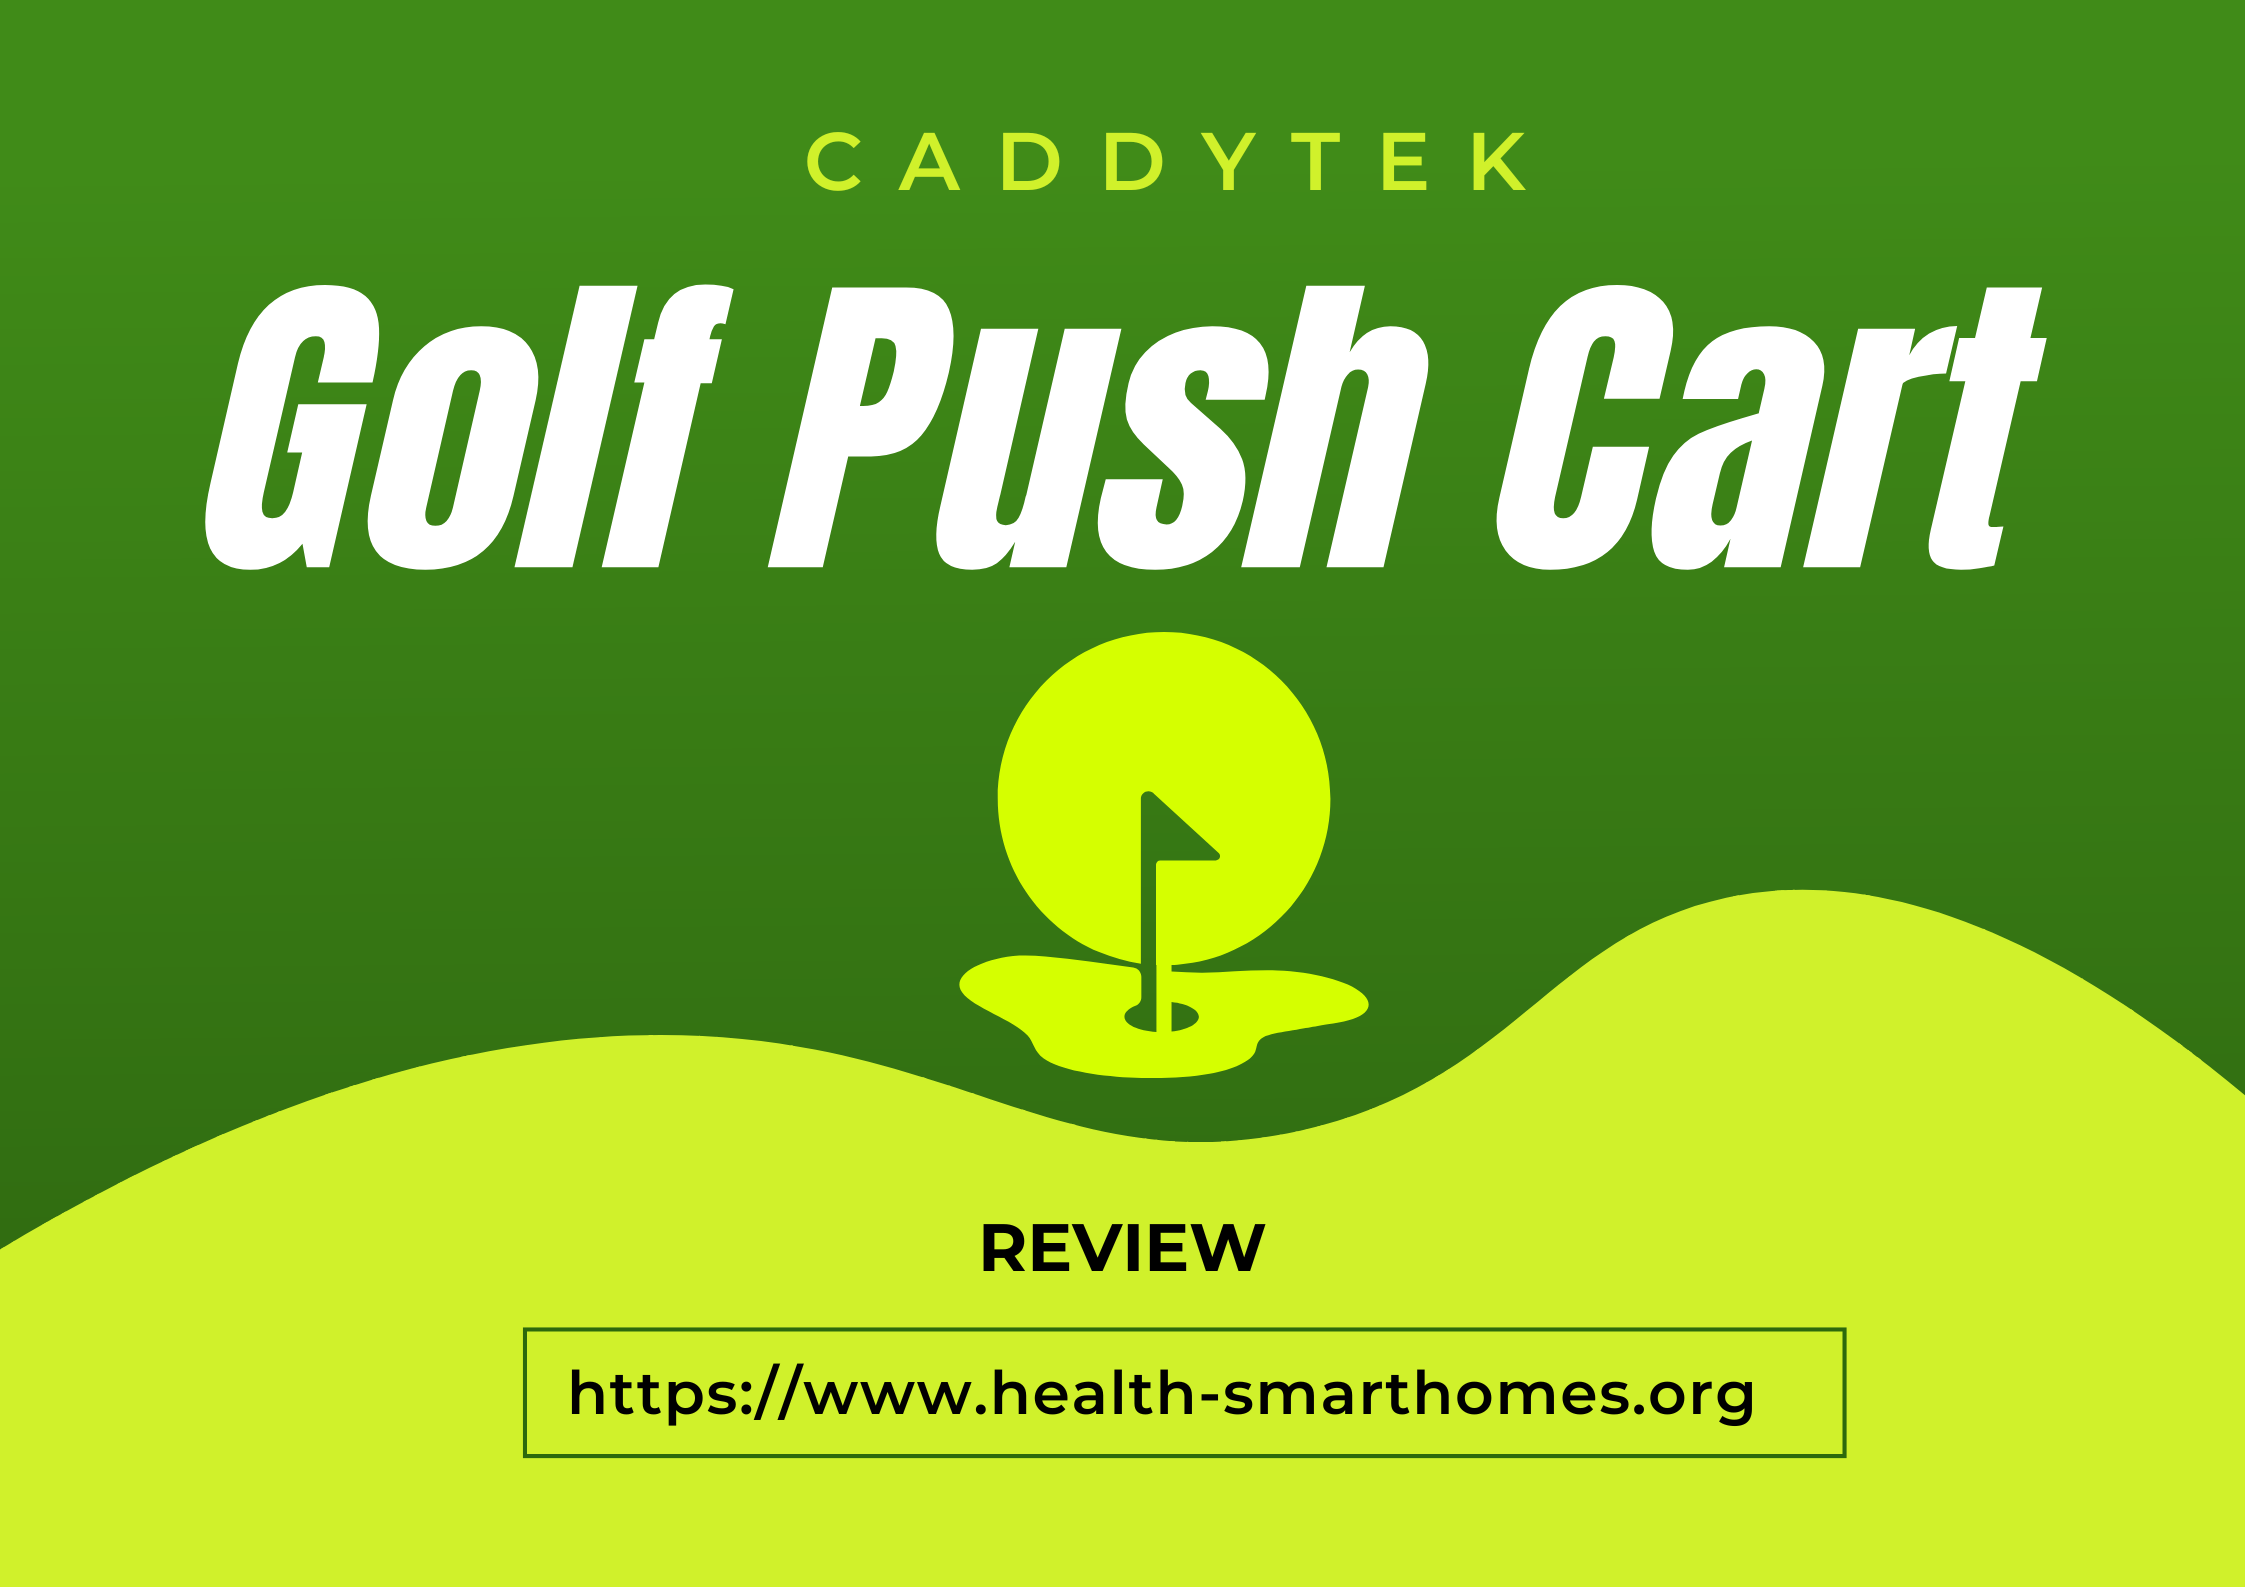 Caddytek Golf Push Cart Buy Guide